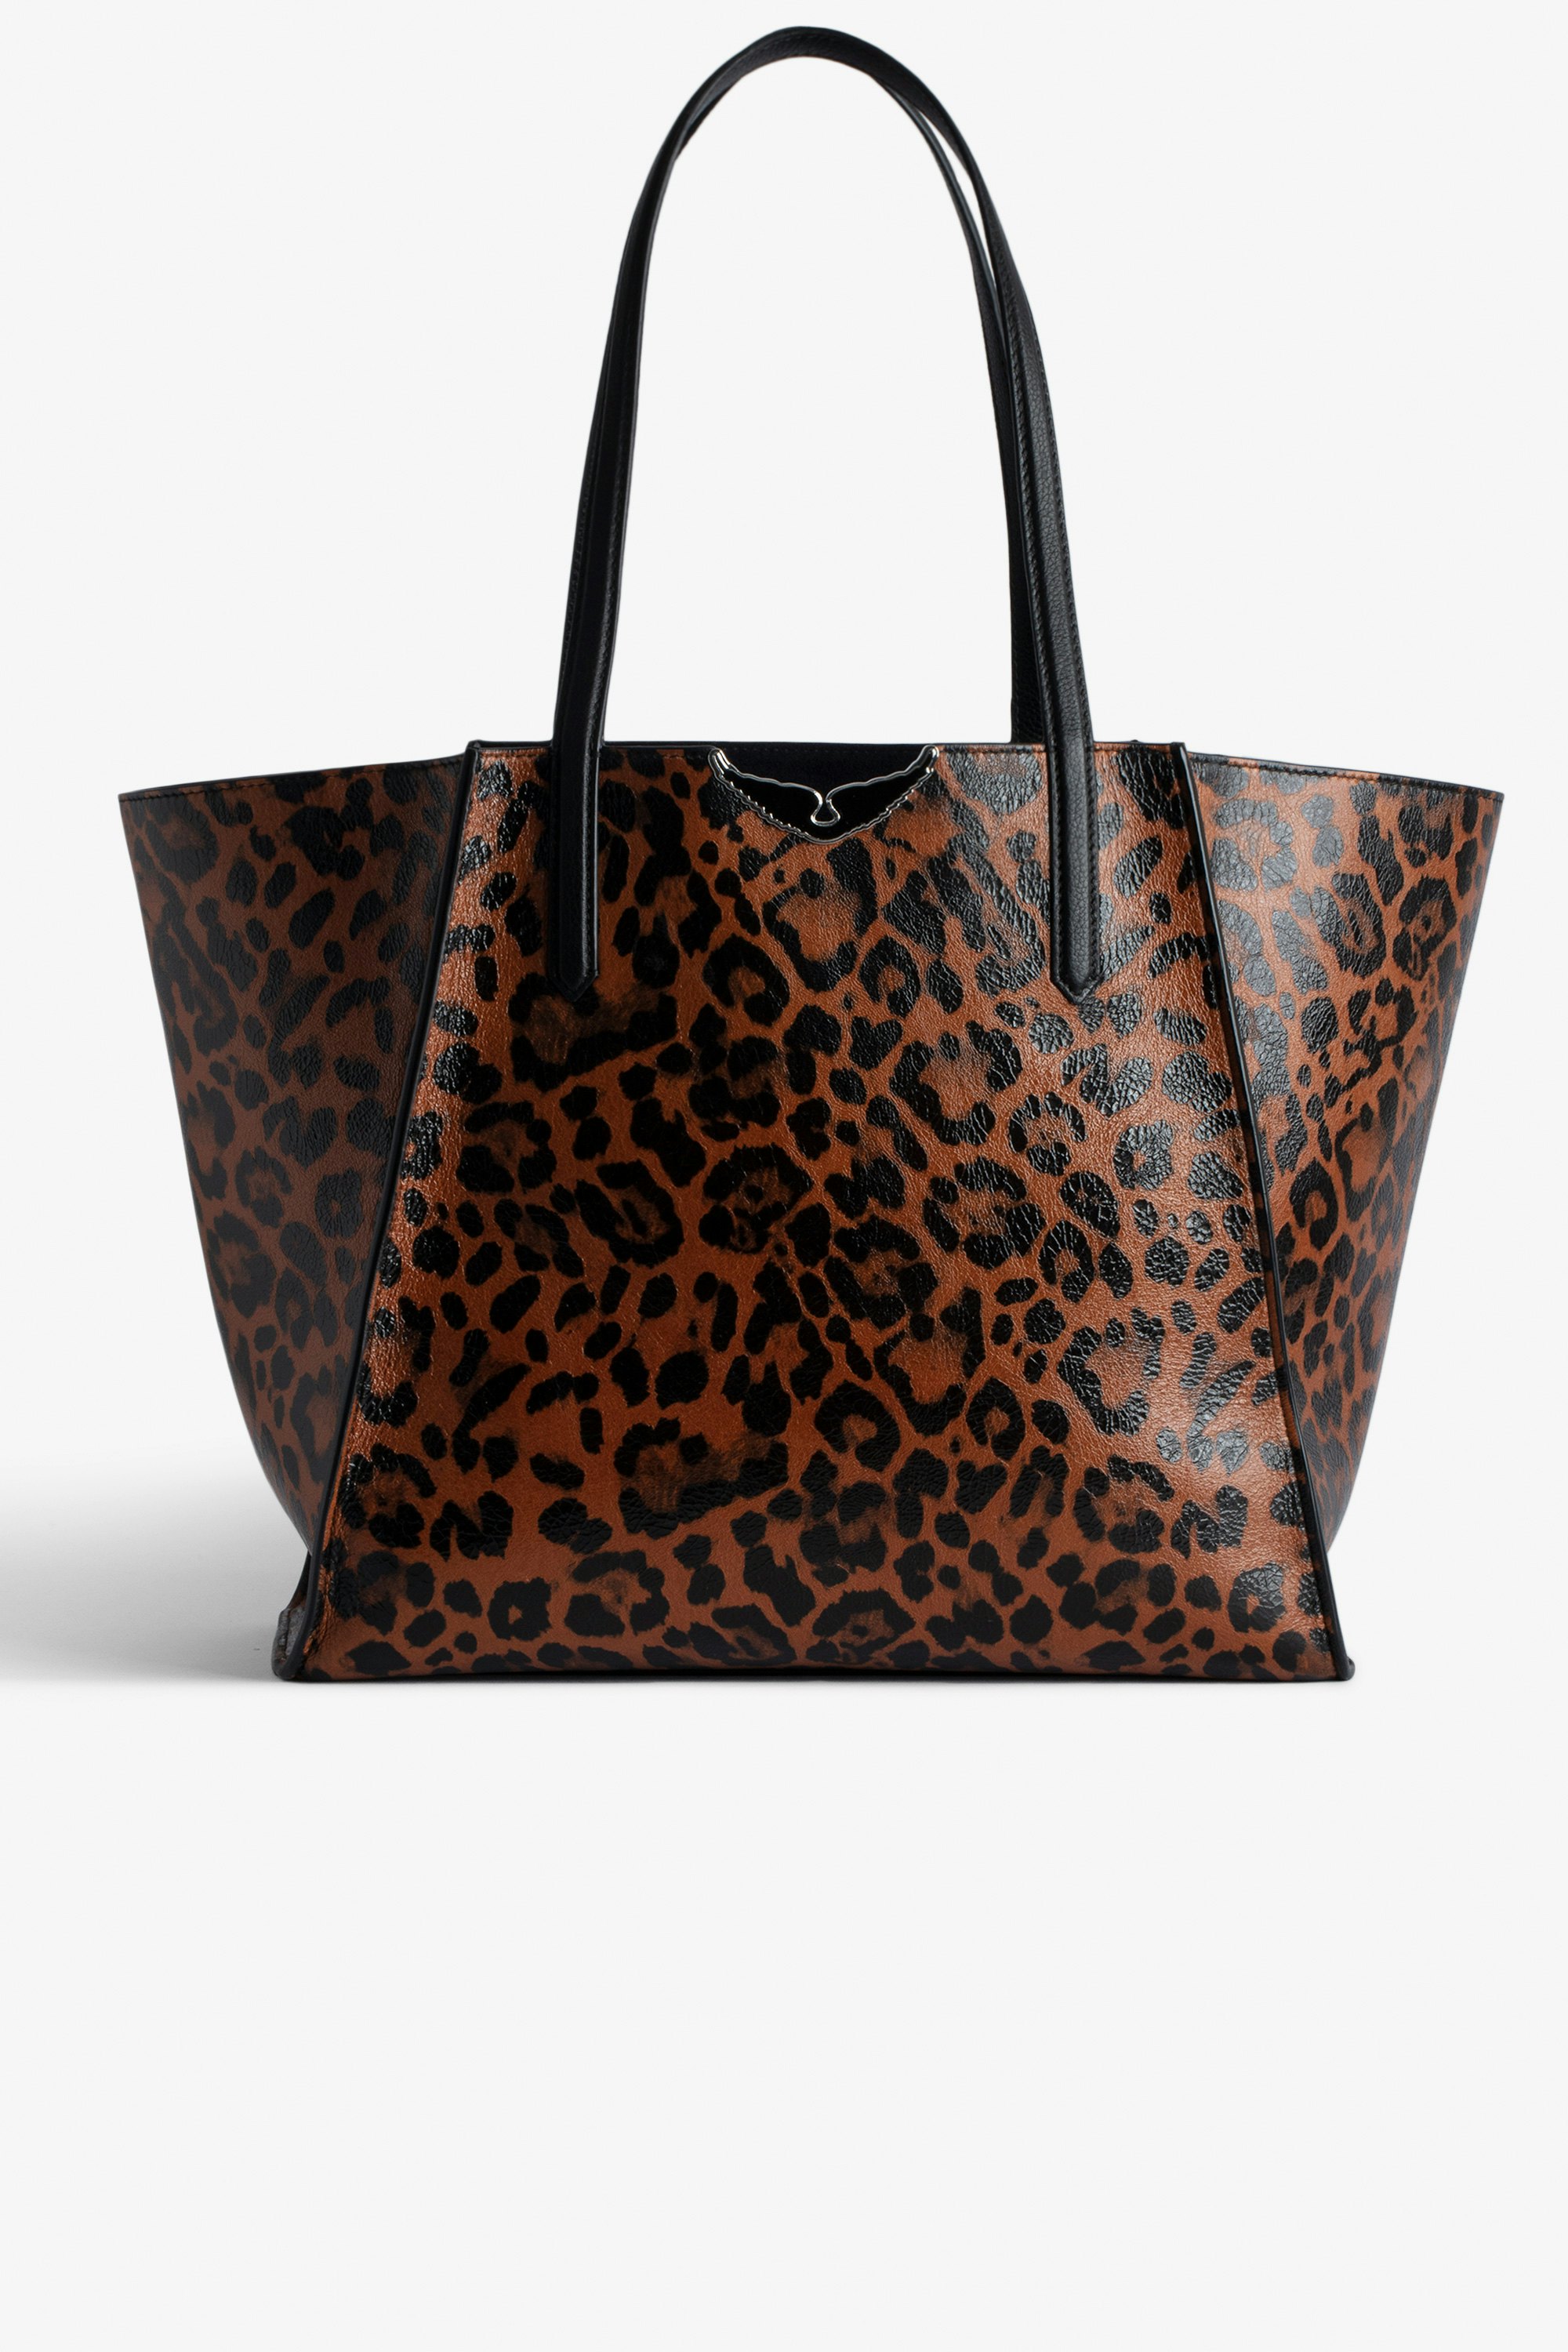 Sac Le Borderline Léopard - Sac cabas réversible en cuir brillant marron imprimé léopard à anse et ailes en métal.